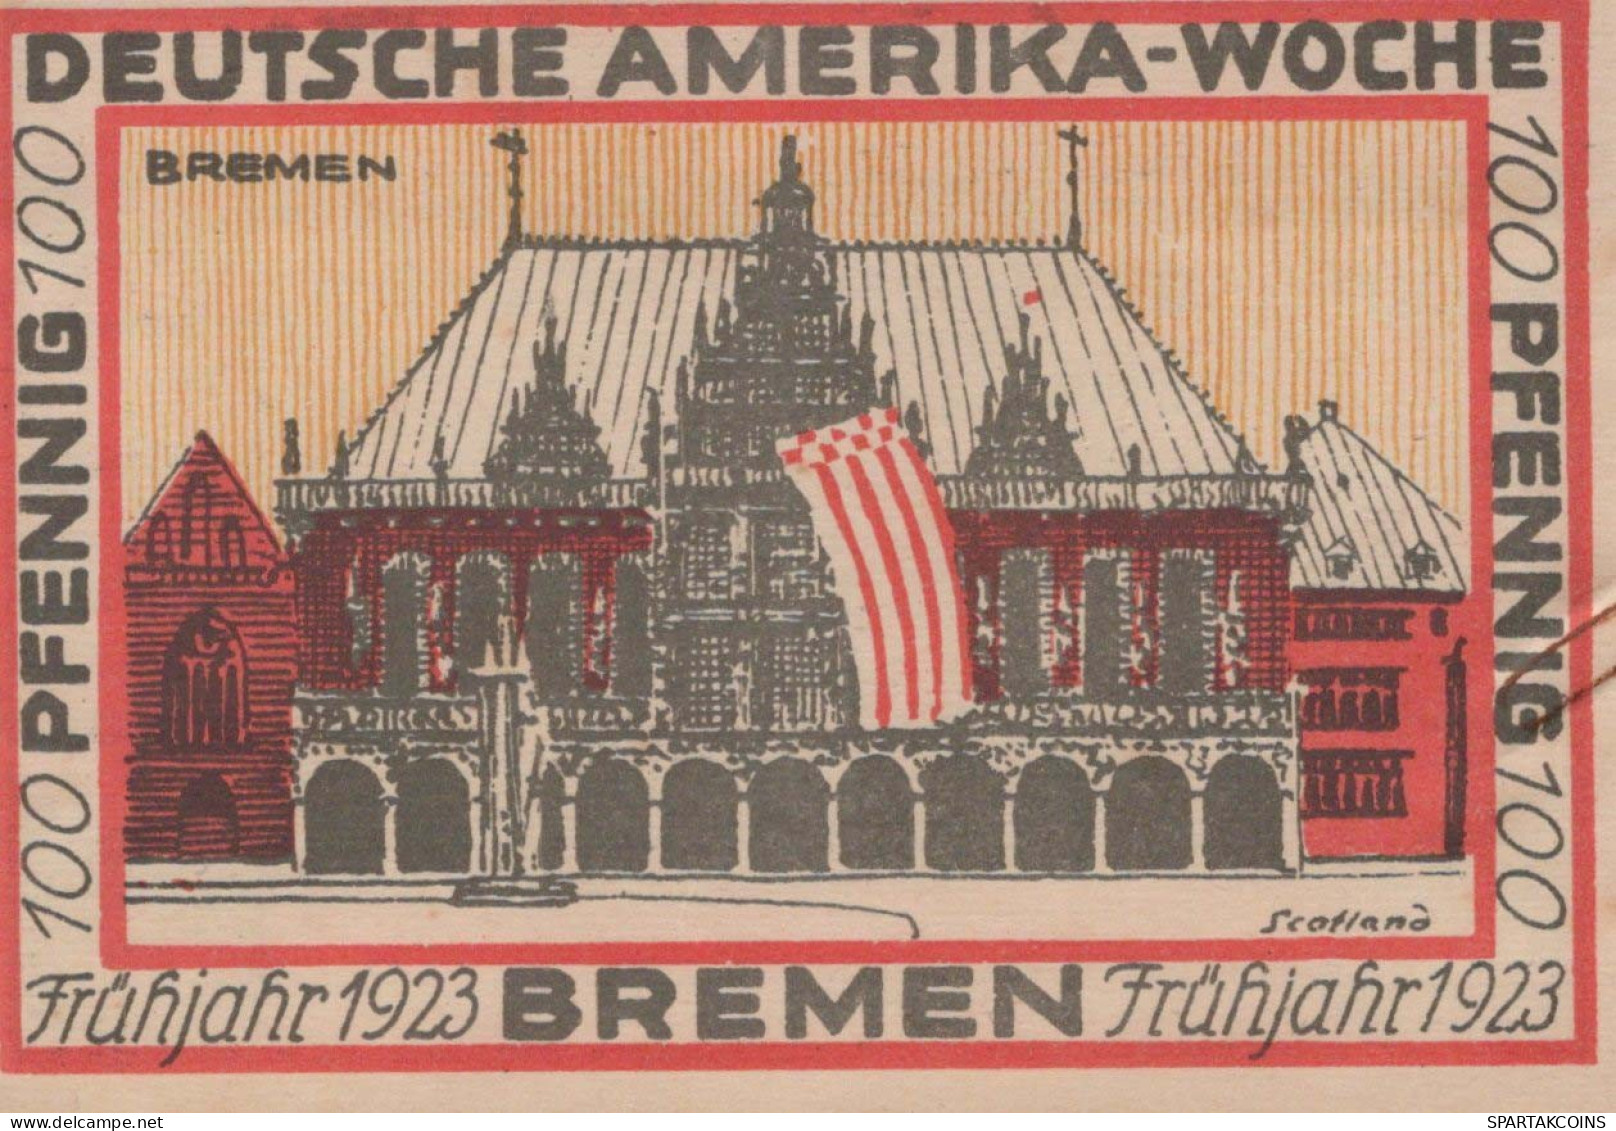 100 PFENNIG 1923 Stadt BREMEN Bremen UNC DEUTSCHLAND Notgeld Banknote #PA309 - [11] Emissioni Locali